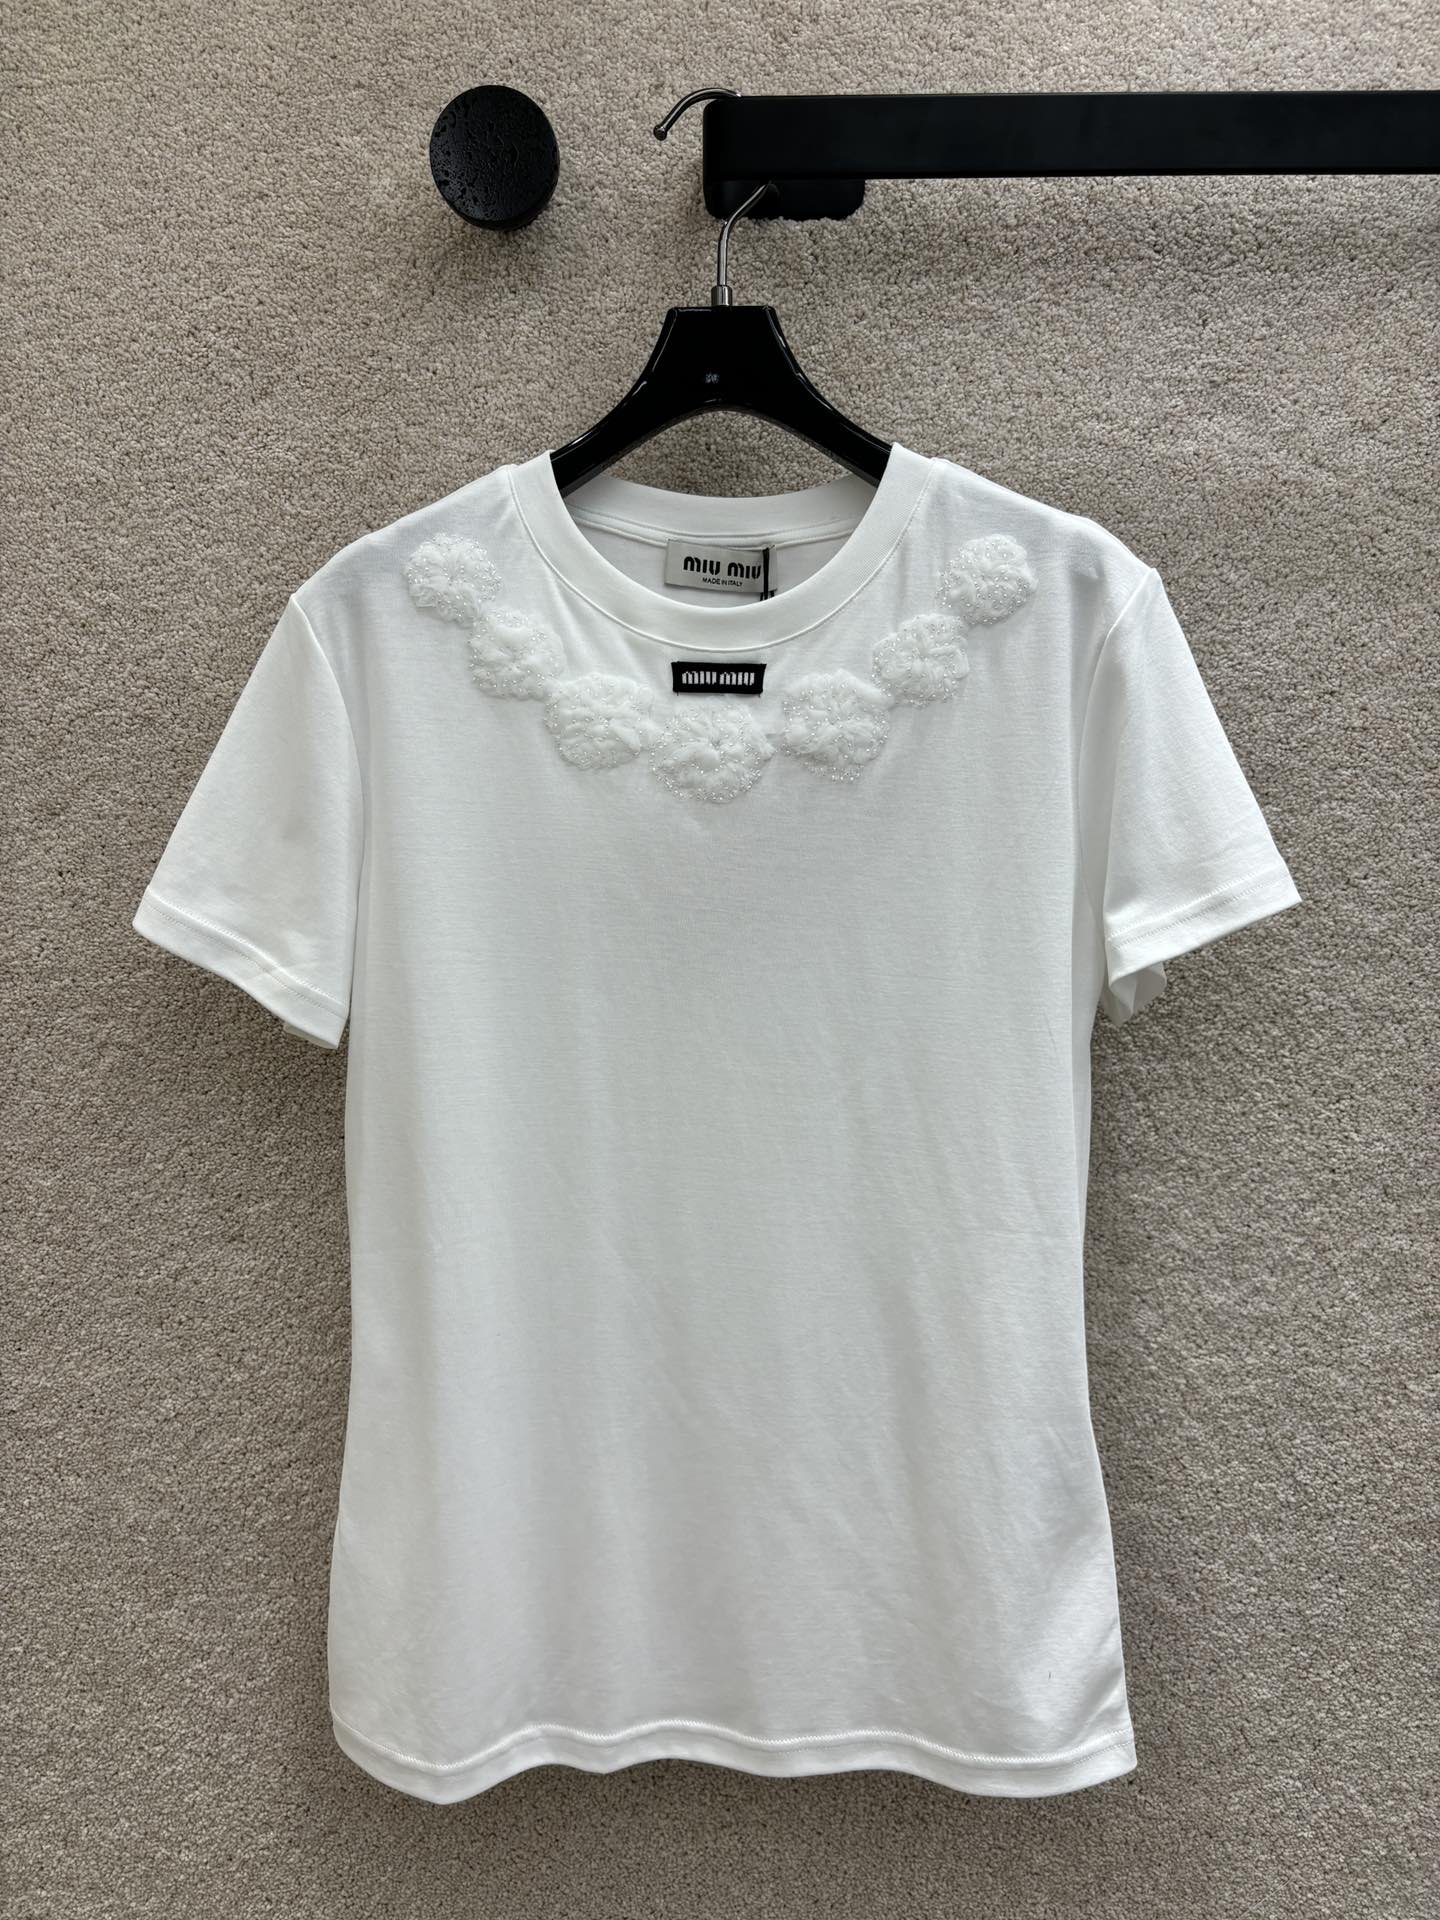 MiuMiu Abbigliamento T-Shirt Ricamo Cotone Garza Collezione Primavera/Estate Maniche corte